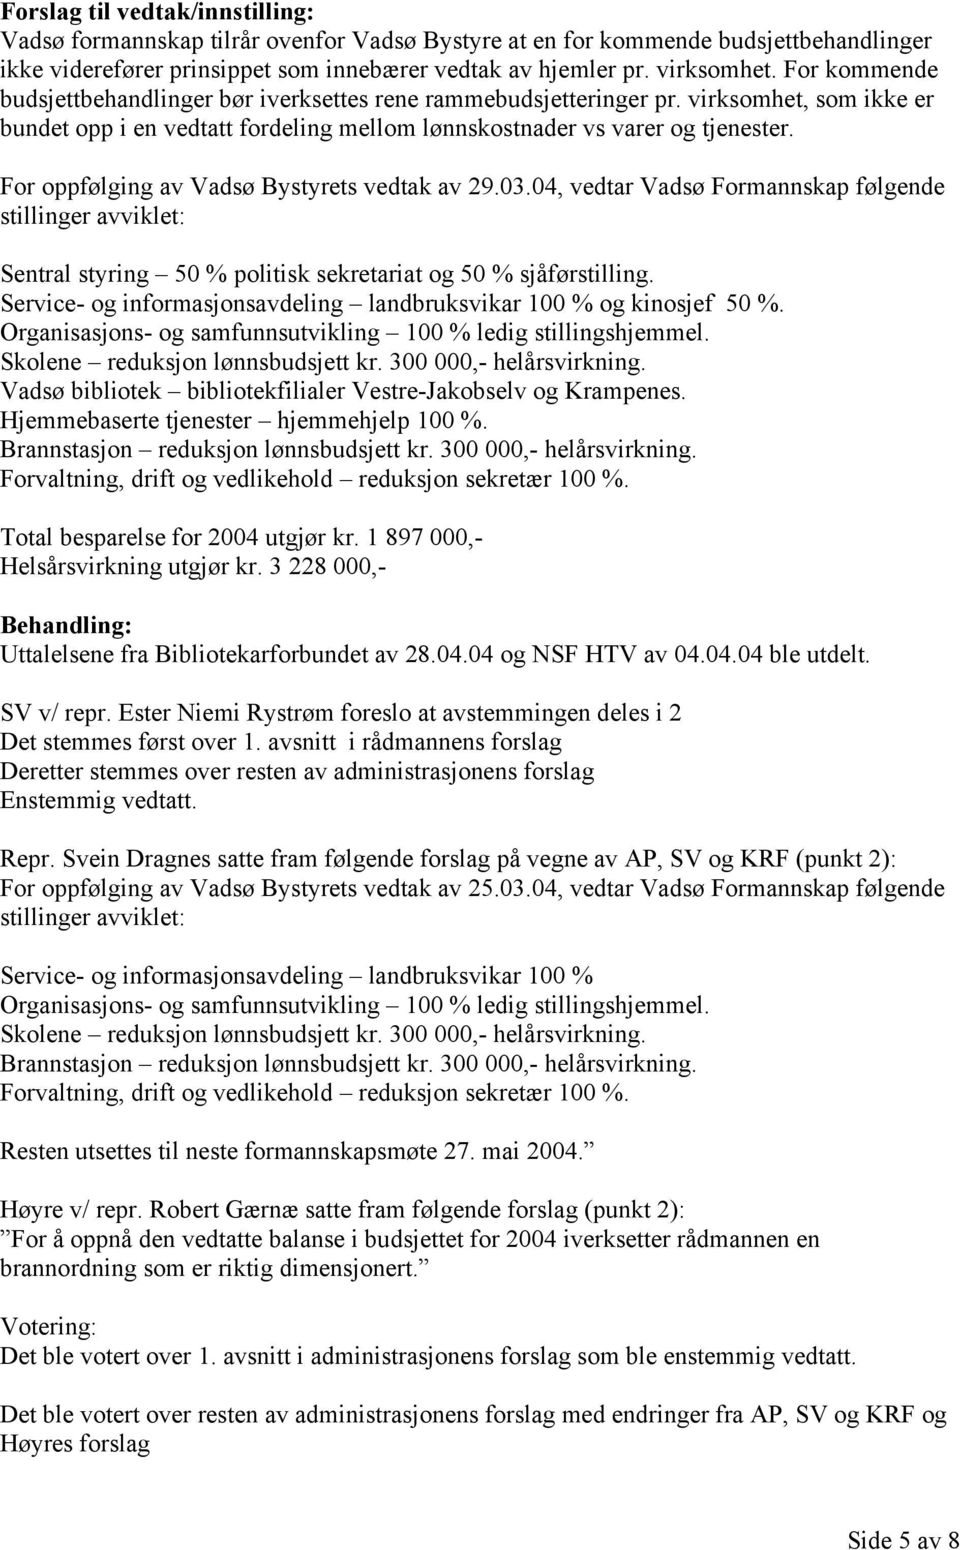 For oppfølging av Vadsø Bystyrets vedtak av 29.03.04, vedtar Vadsø Formannskap følgende stillinger avviklet: Sentral styring 50 % politisk sekretariat og 50 % sjåførstilling.